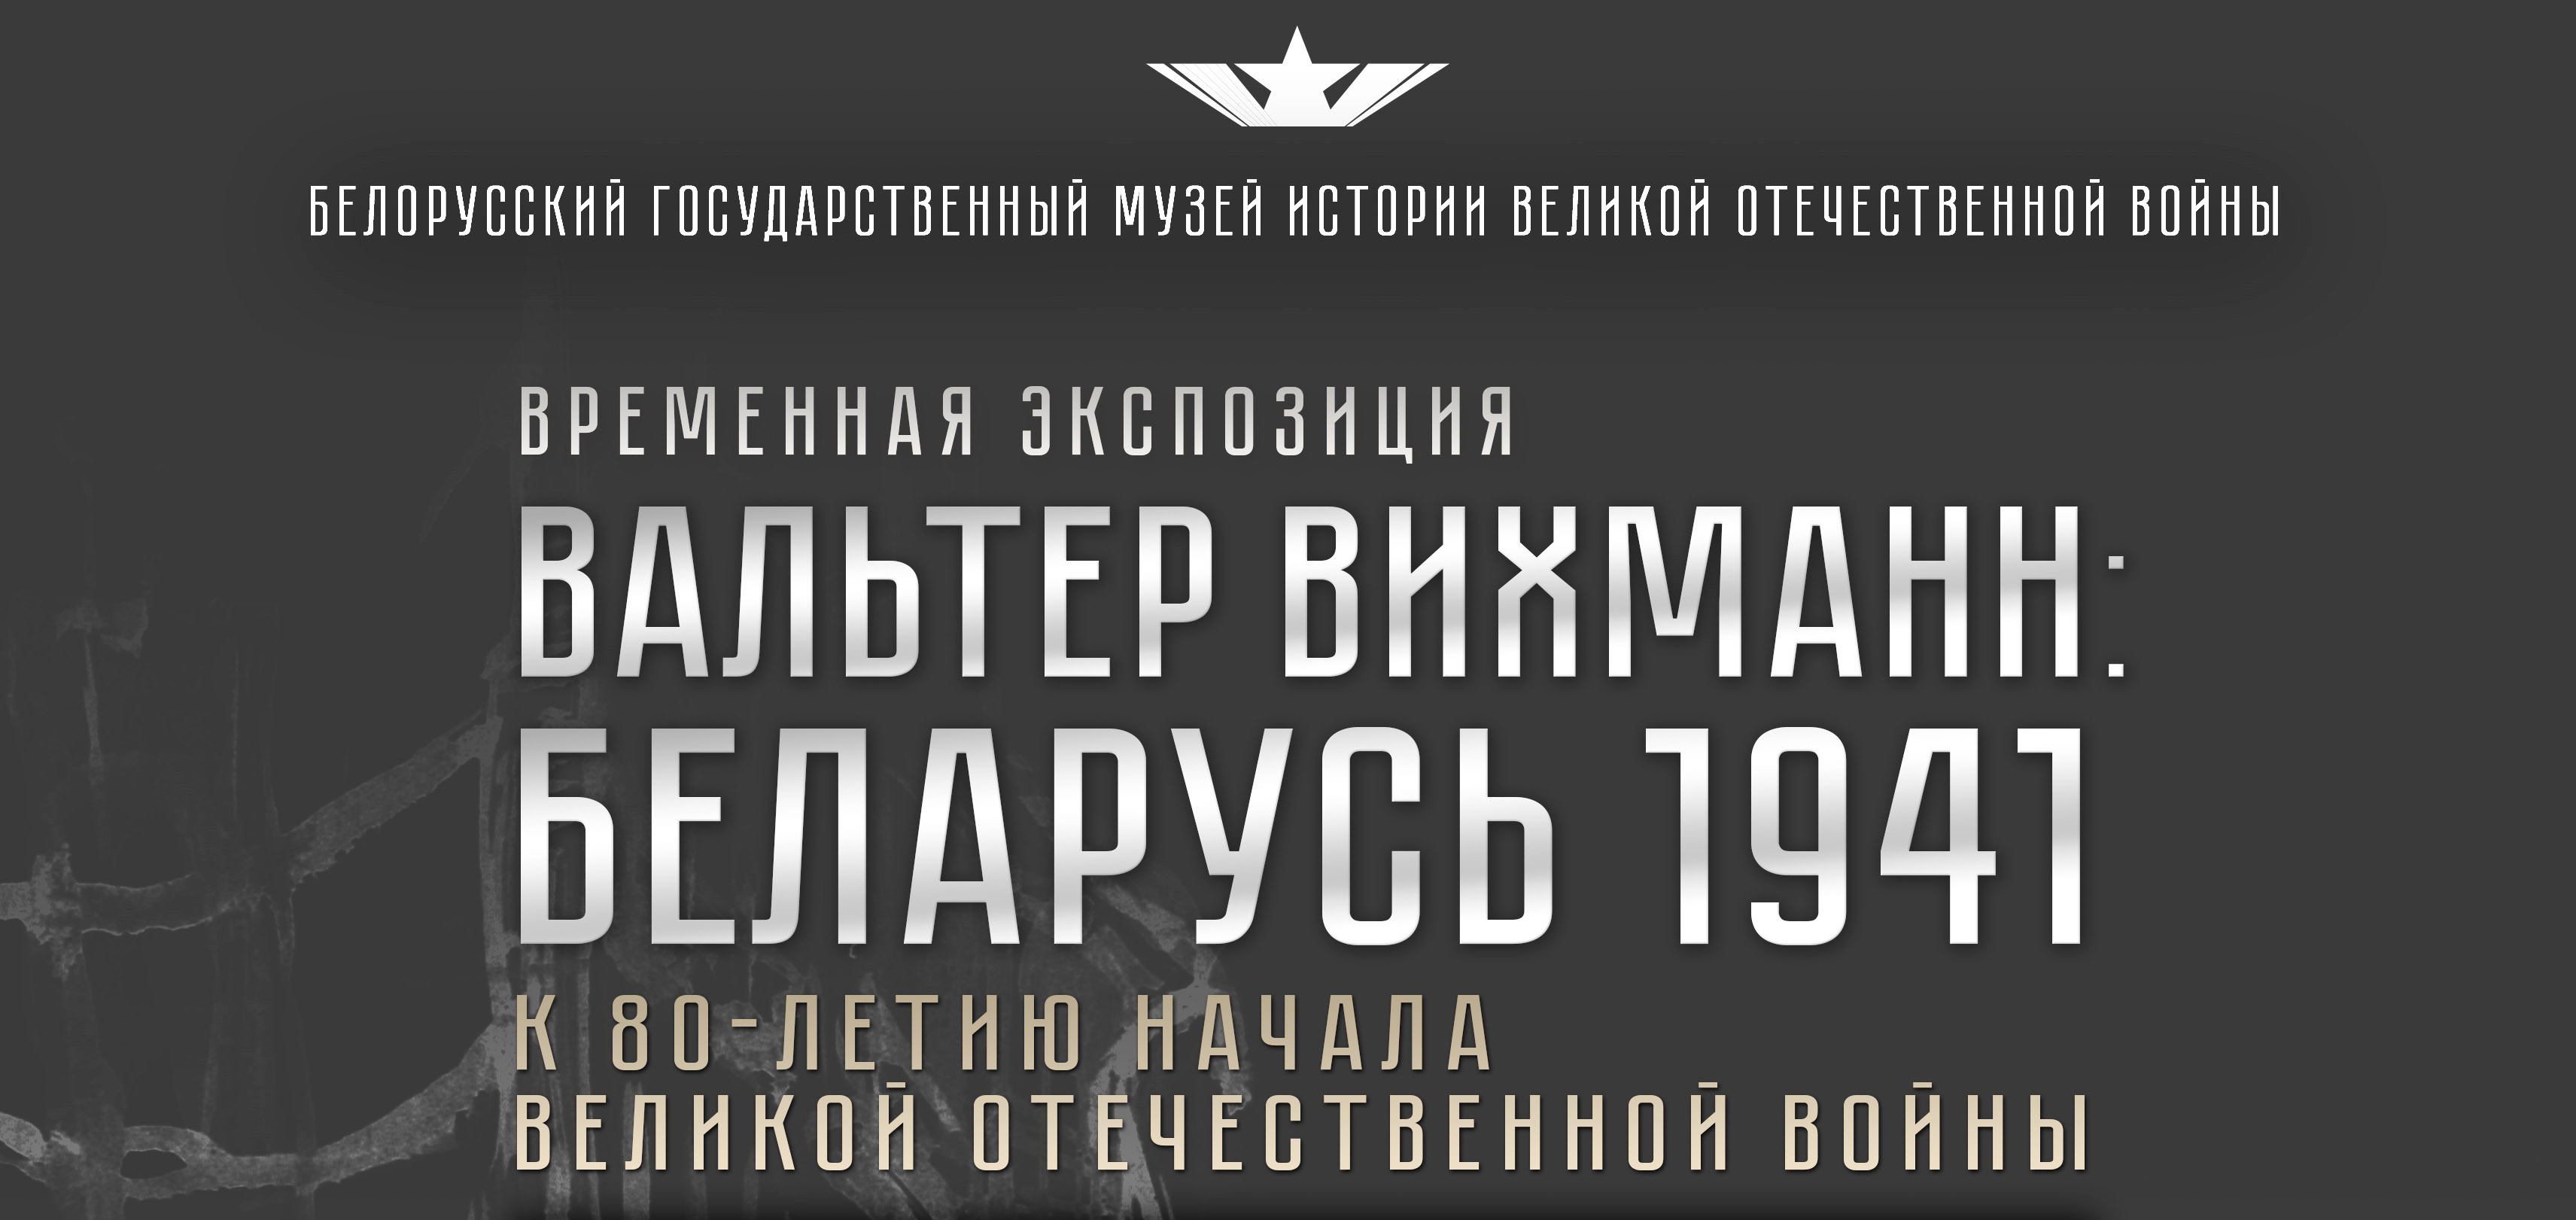 Открытие временной экспозиции «Вальтер Вихманн: Беларусь 1941»